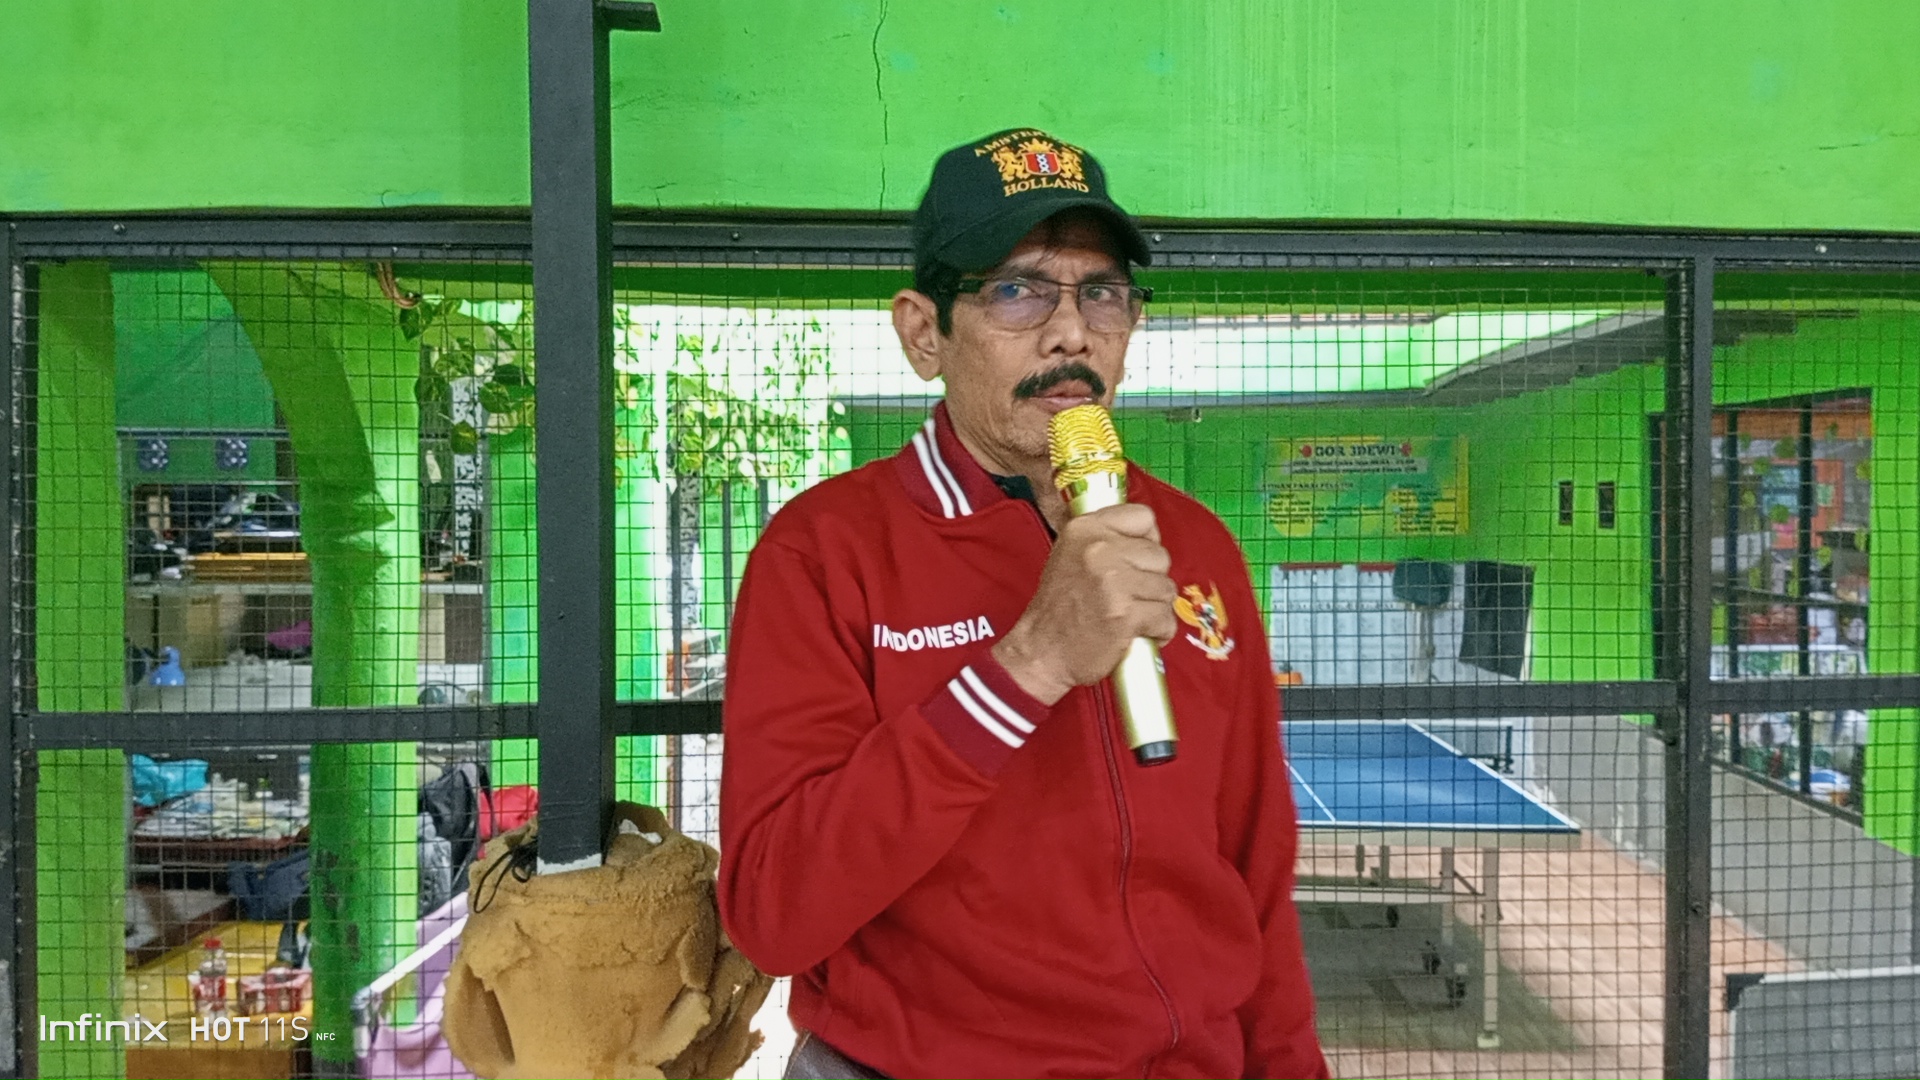 Hermawan Pengusaha Sukses yang Dipercaya Jadi Ketua Paguyuban Persatuan Tenis Meja Kota Bekasi